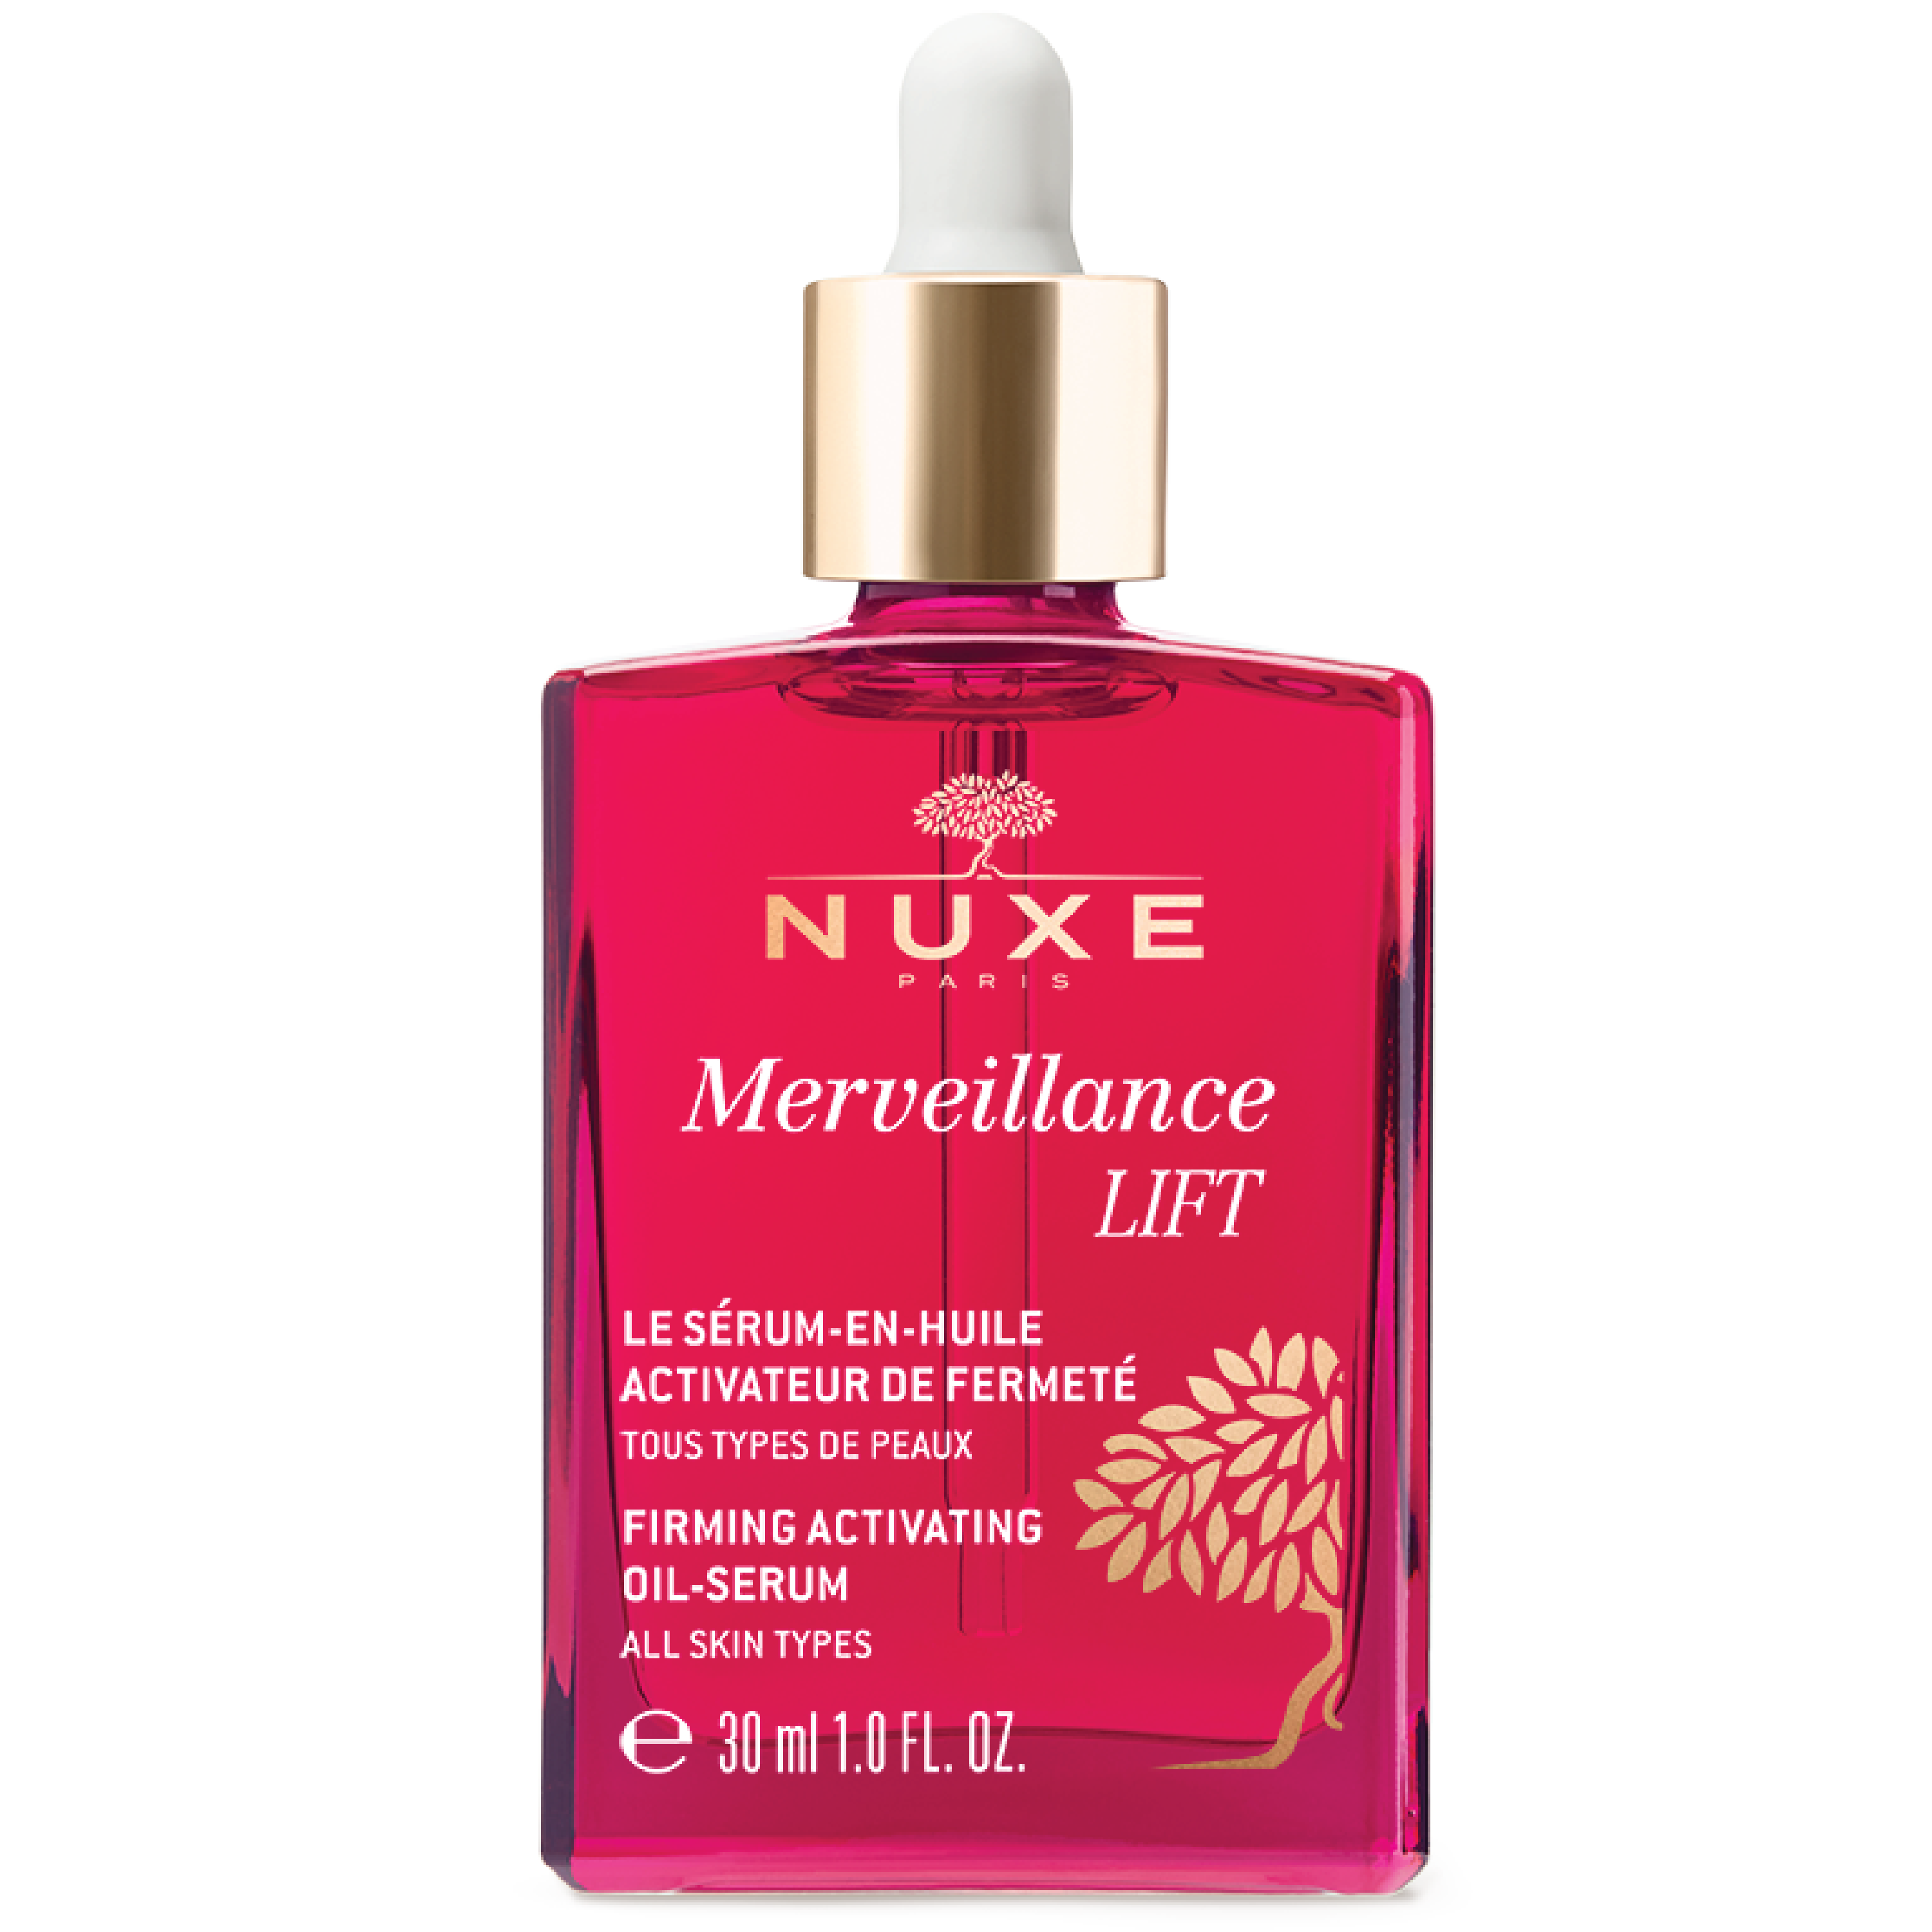 NUXE Merveillence Lift Firming Activating Oil-Serum, 30 ml